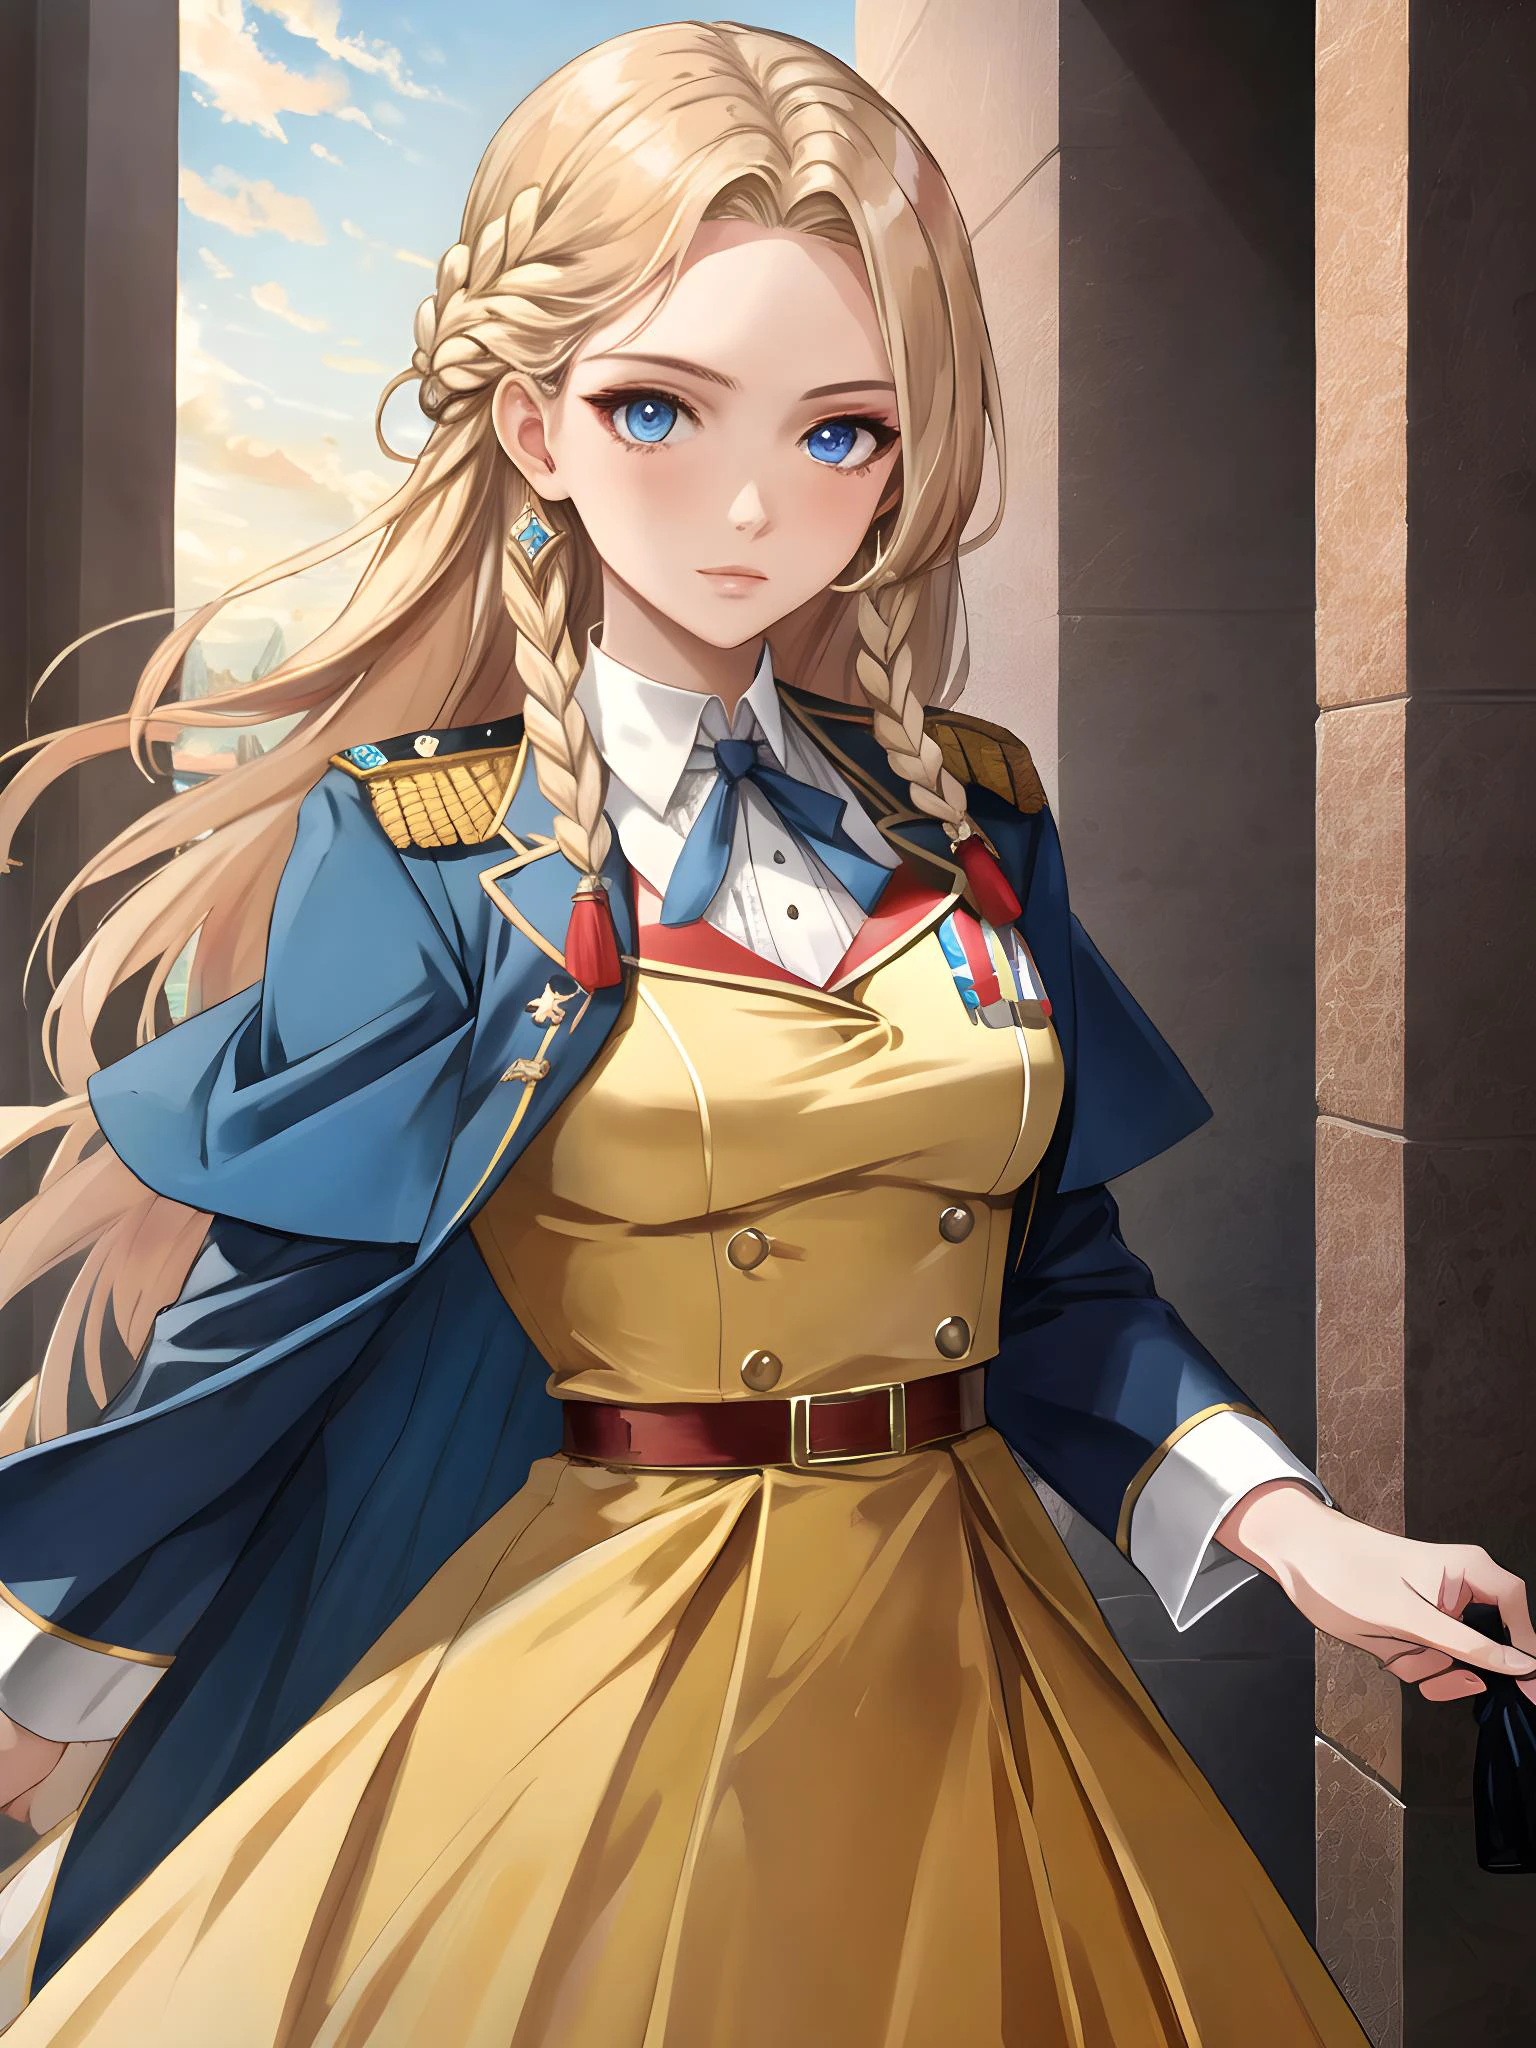 هايدي فيلوشيك (أنثى, في سن المراهقة, شعر أشقر طويل مضفر, عيون زرقاء, الروسية, تمثال نصفي صغير) اللباس العسكري الرسمي, (تحفة) (مفصلة للغاية) (8 كيلو), (الإضاءة الديناميكية)